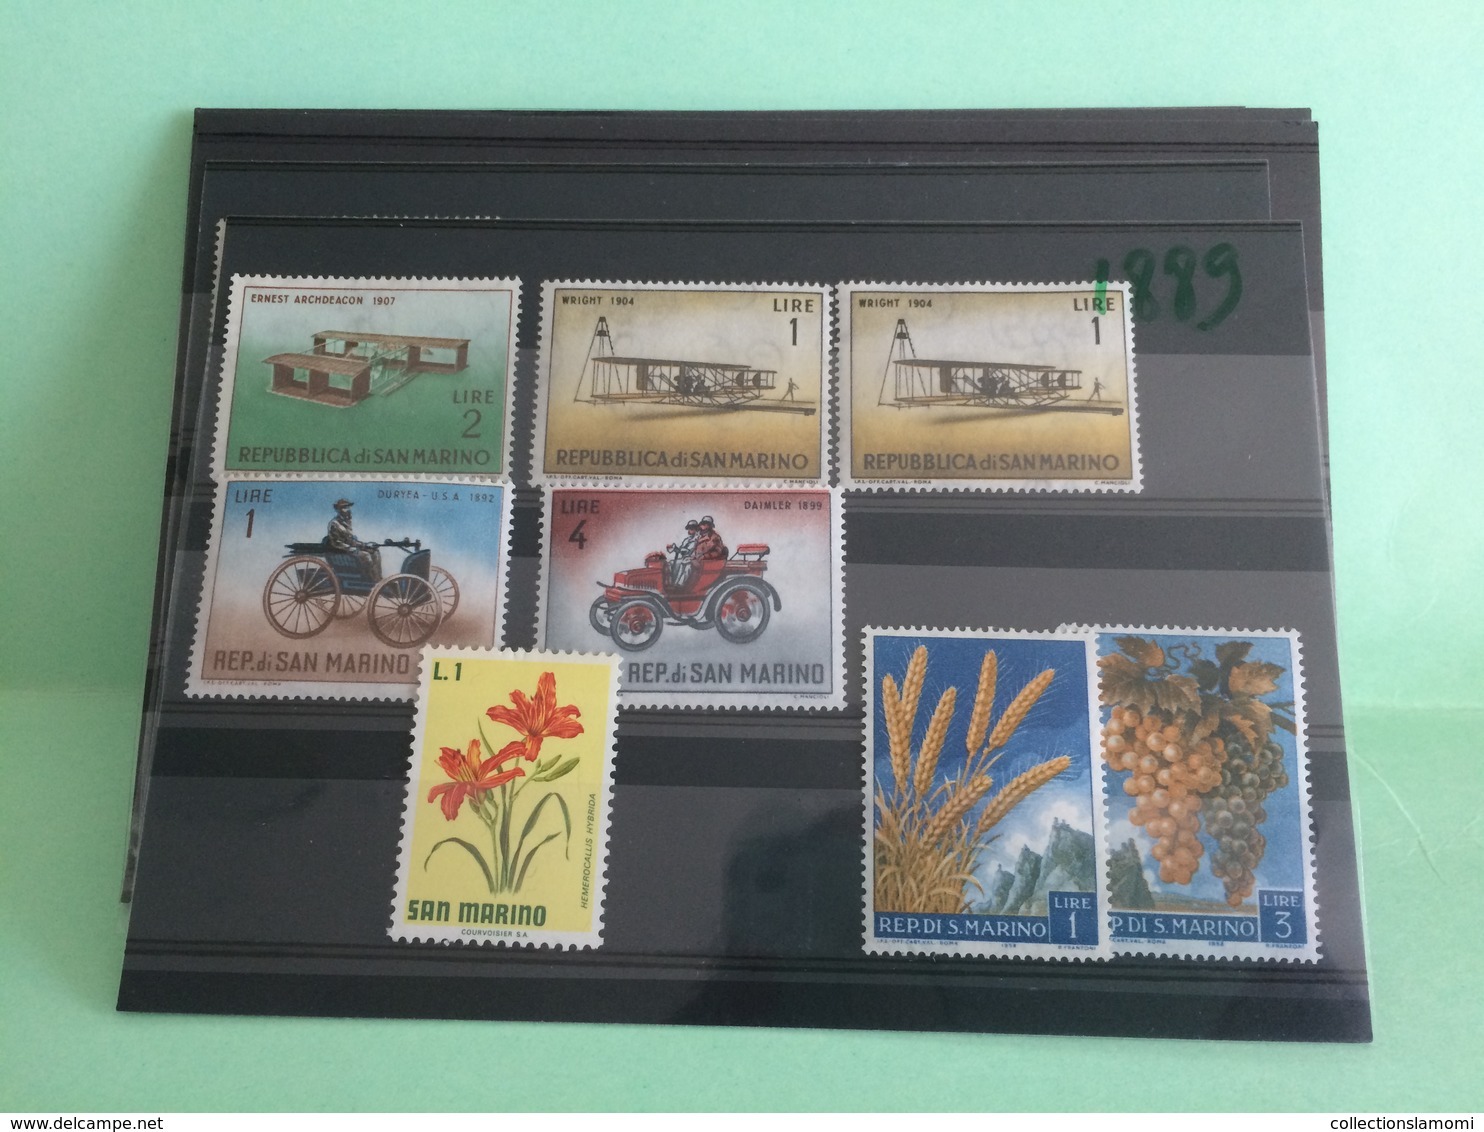 Lot timbres neufs, Monde Afrique,Amérique,Asie,Europe,Pays voir photos (n°12)